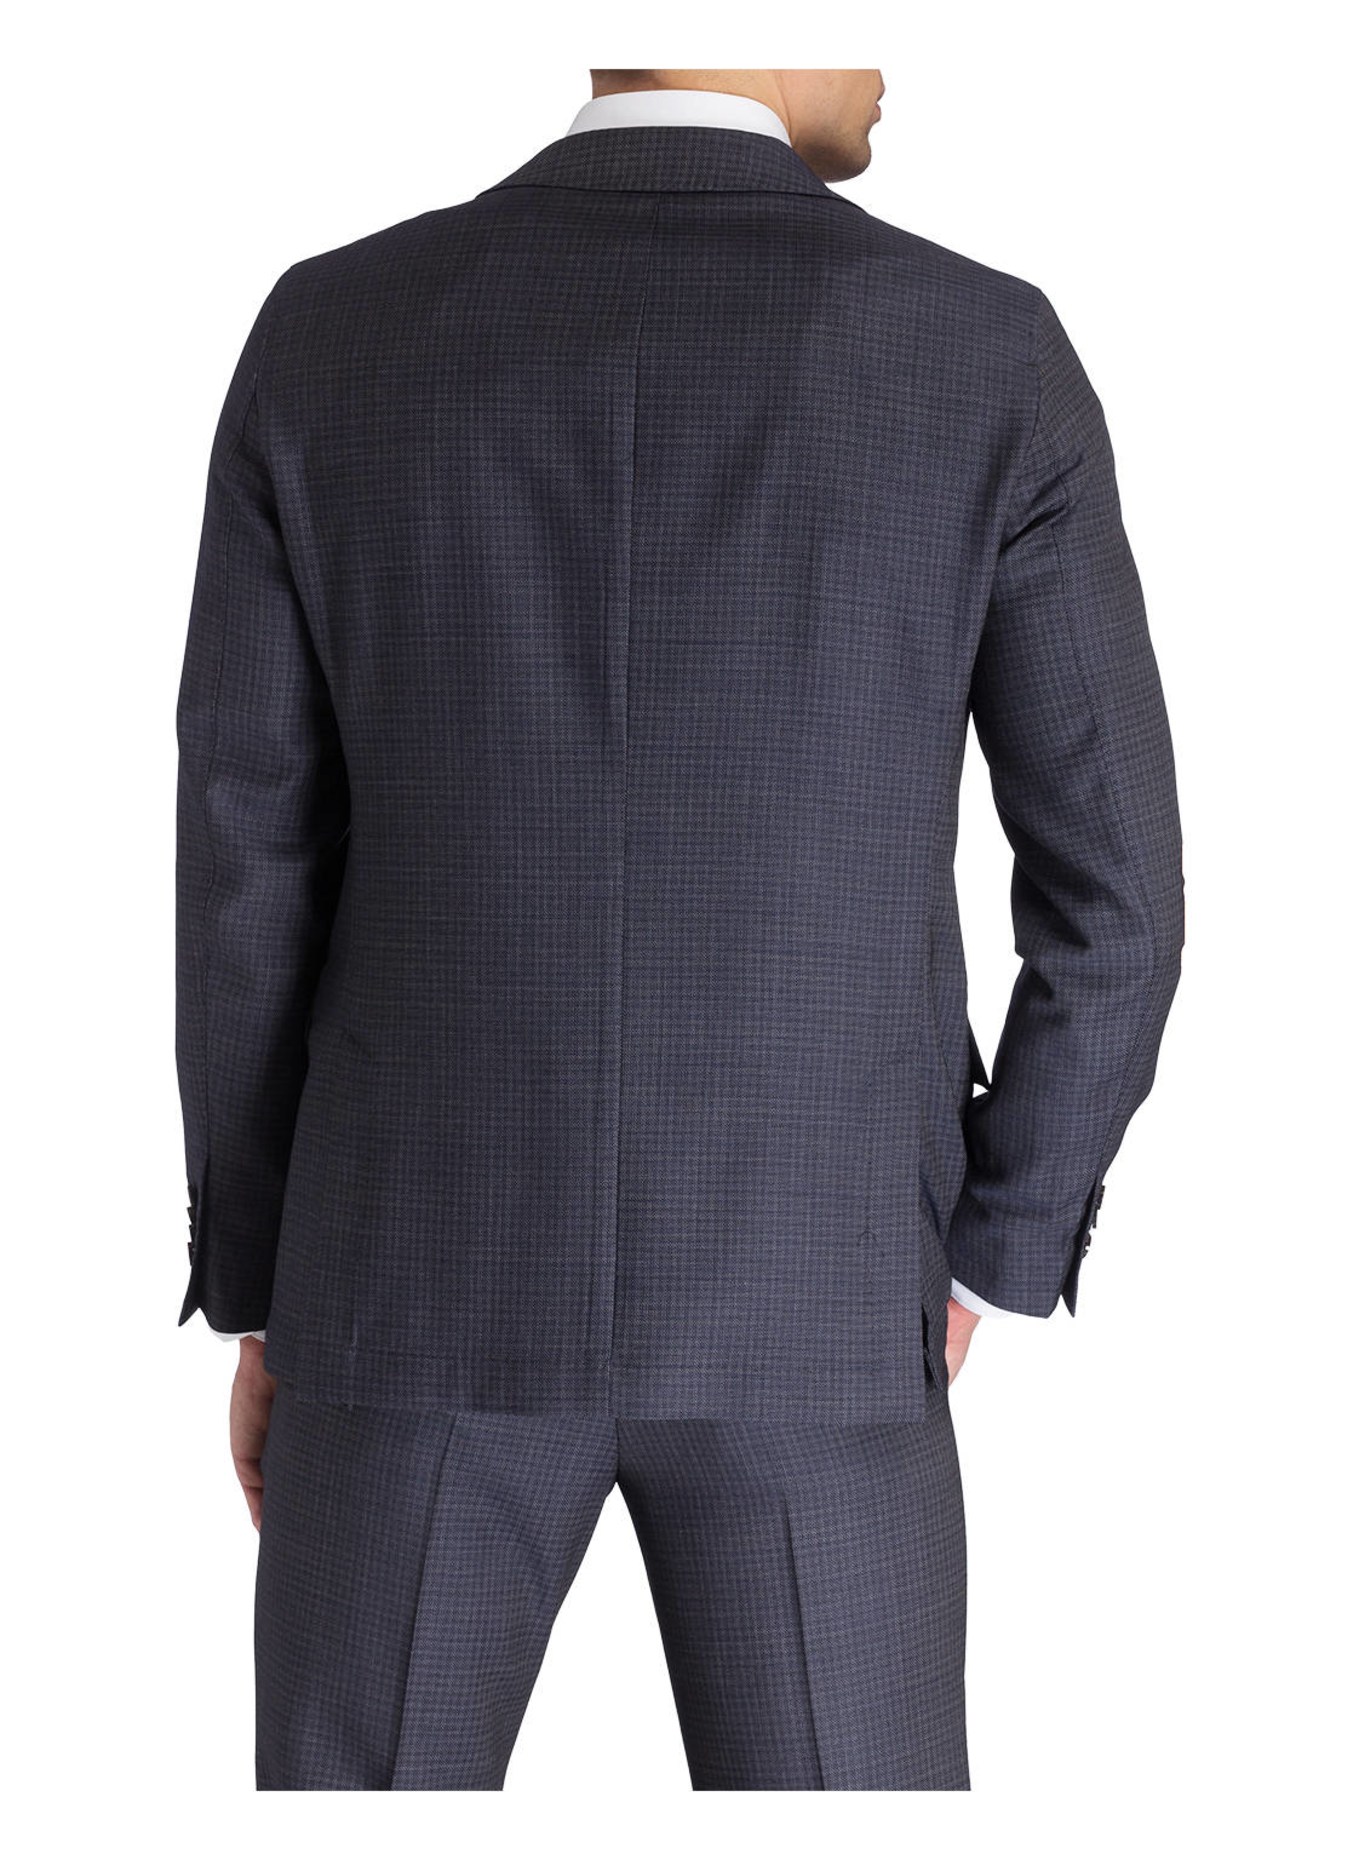 PAUL Suit jacket Slim Fit, Color: 105 navy (Image 4)